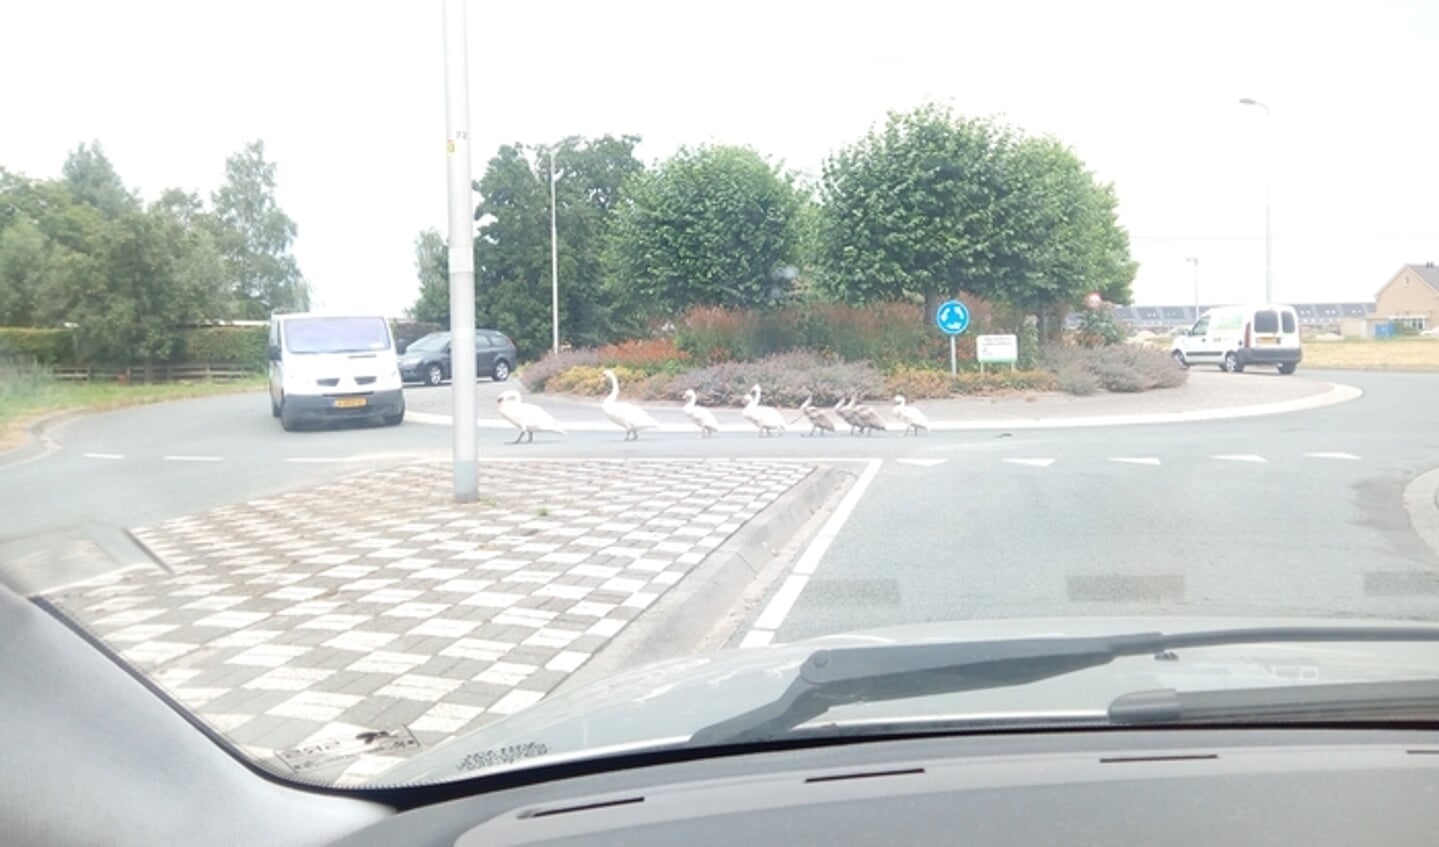 Anneke Van de Wetering spotte deze zwanen op de eerste rotonde van de Ketelweg en vraagt zich af of de zwanen in de fout zijn, of dat het Engelse zwanen op vakantie zijn.